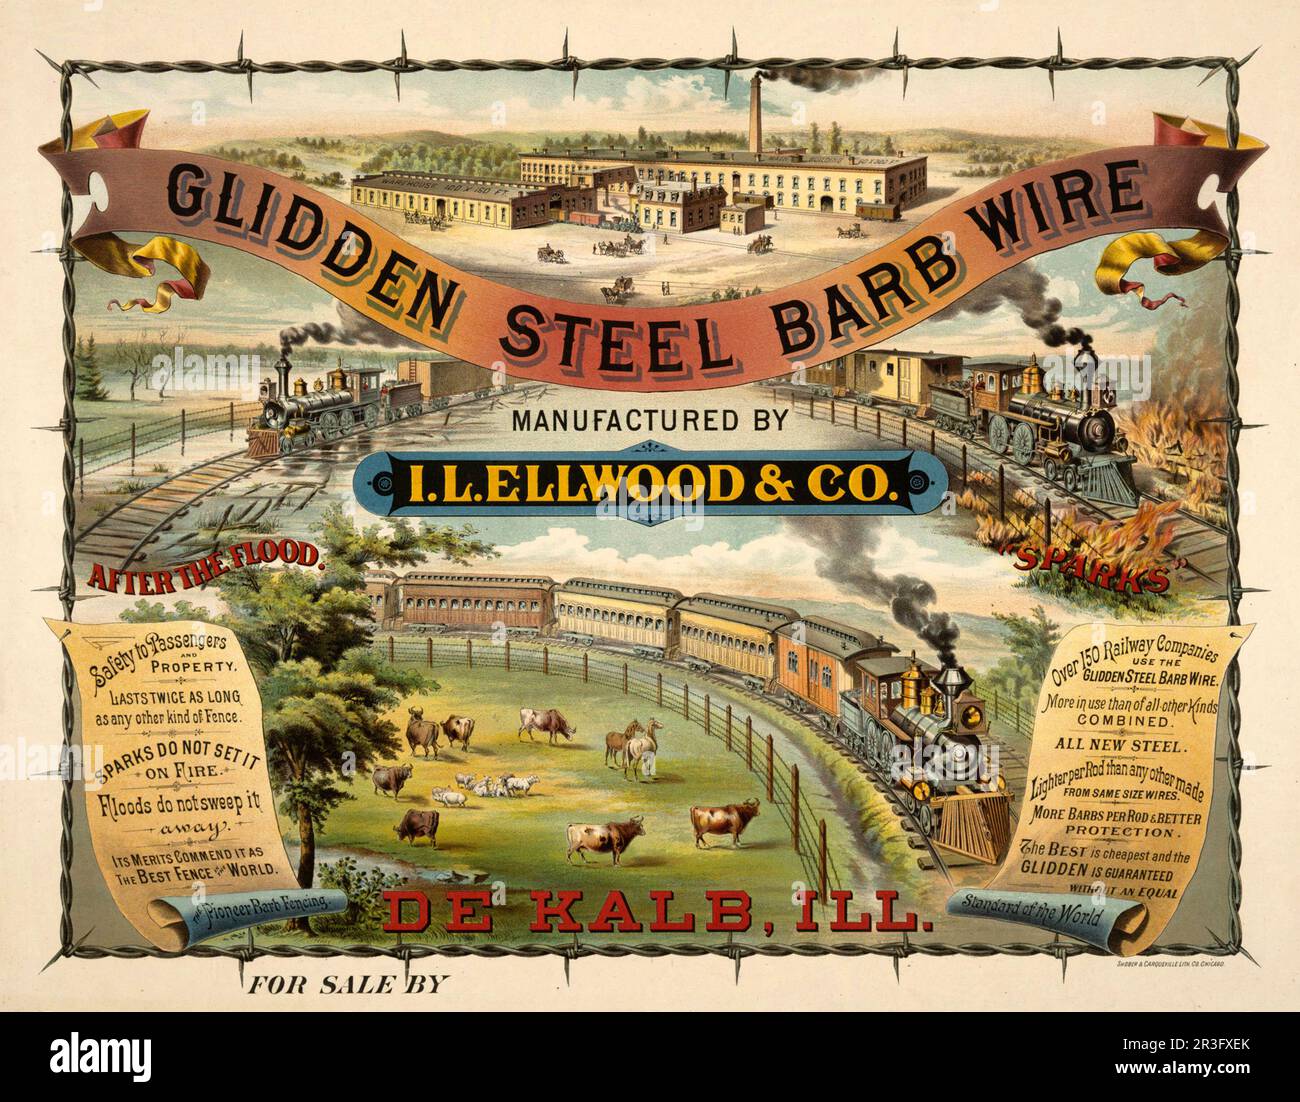 Publicité vintage pour les barbelés en acier Glidden fabriqués par I. L. Ellwood & Co Banque D'Images